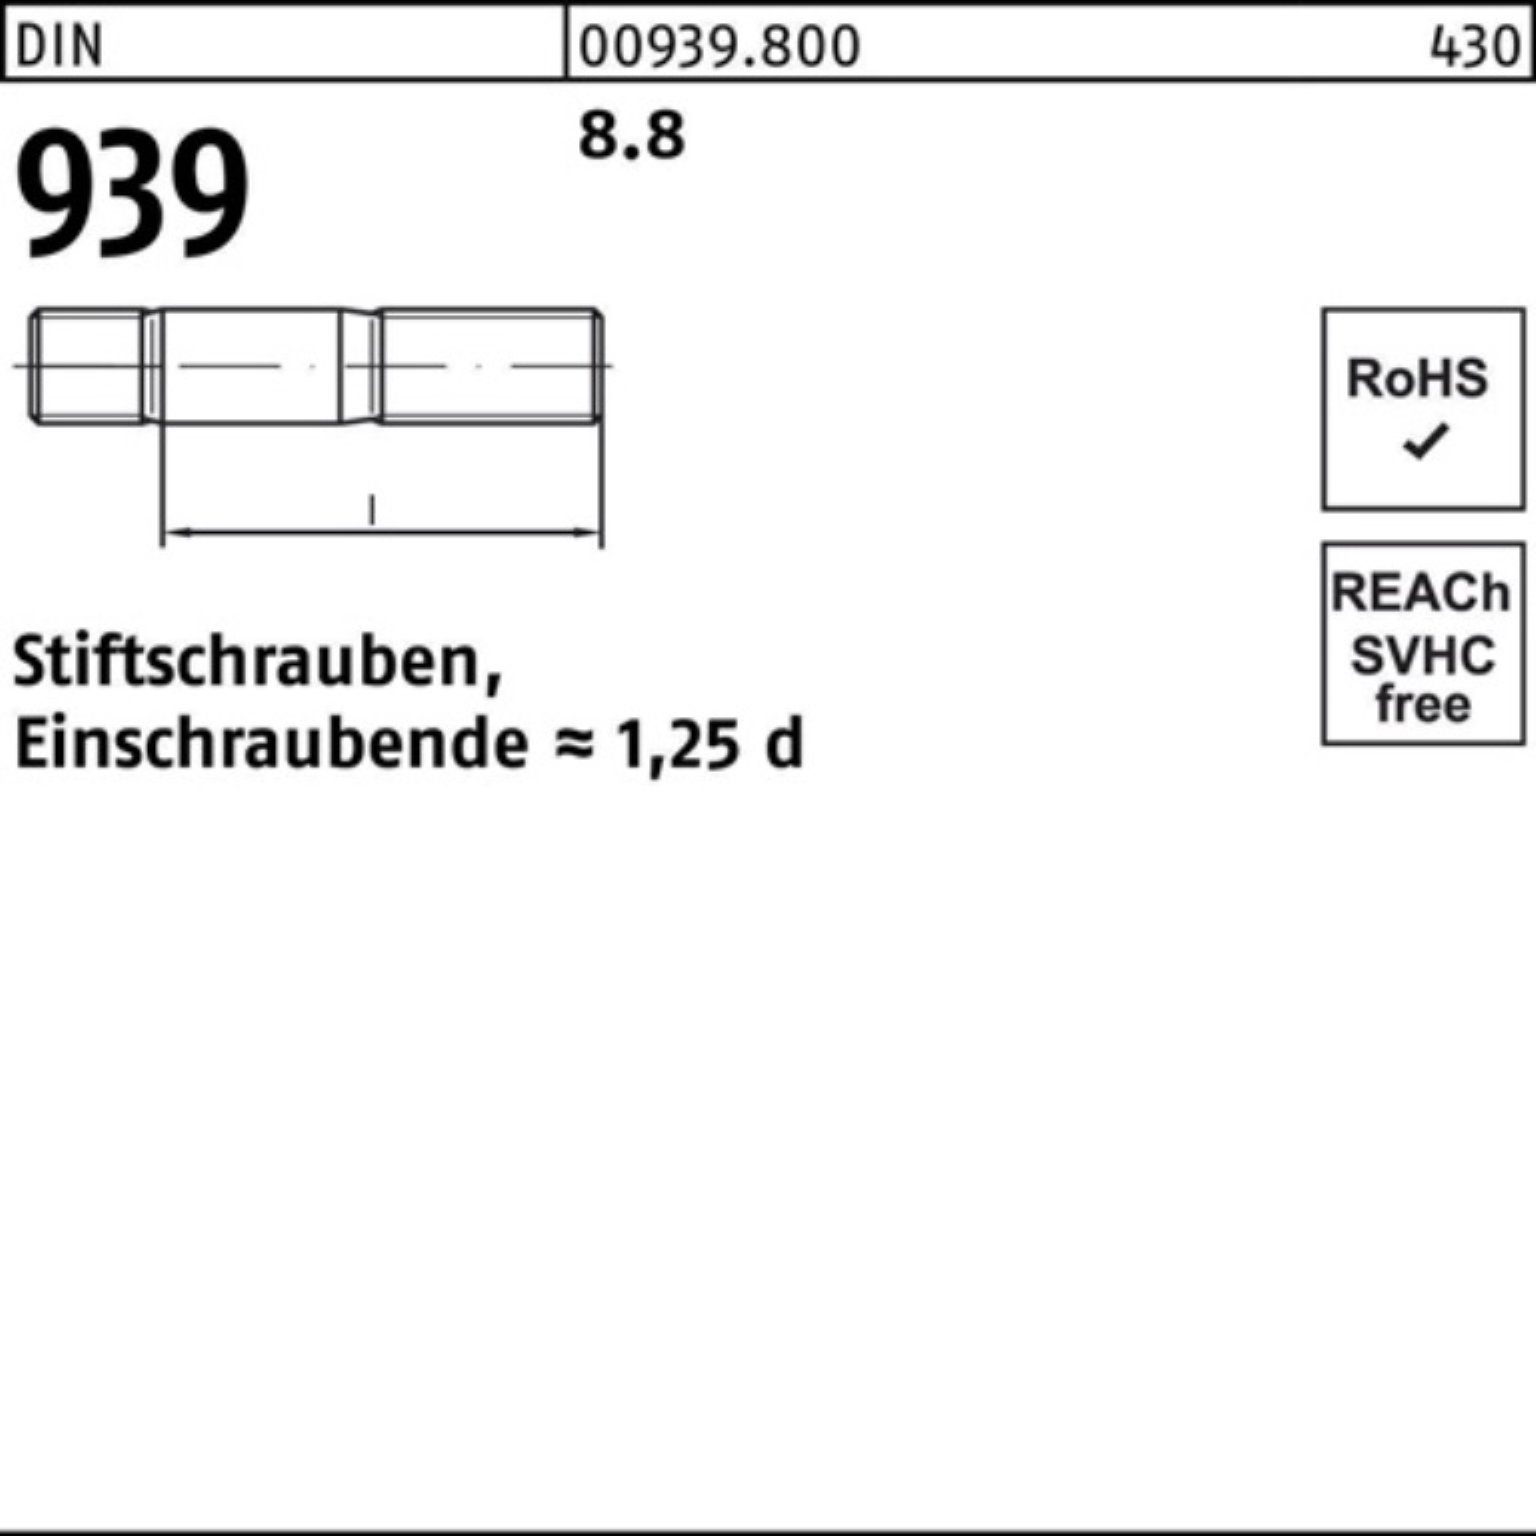 Reyher 8.8 M16x Pack 25 35 100er S Stiftschraube 939 DIN Einschraubende=1,25d Stiftschraube